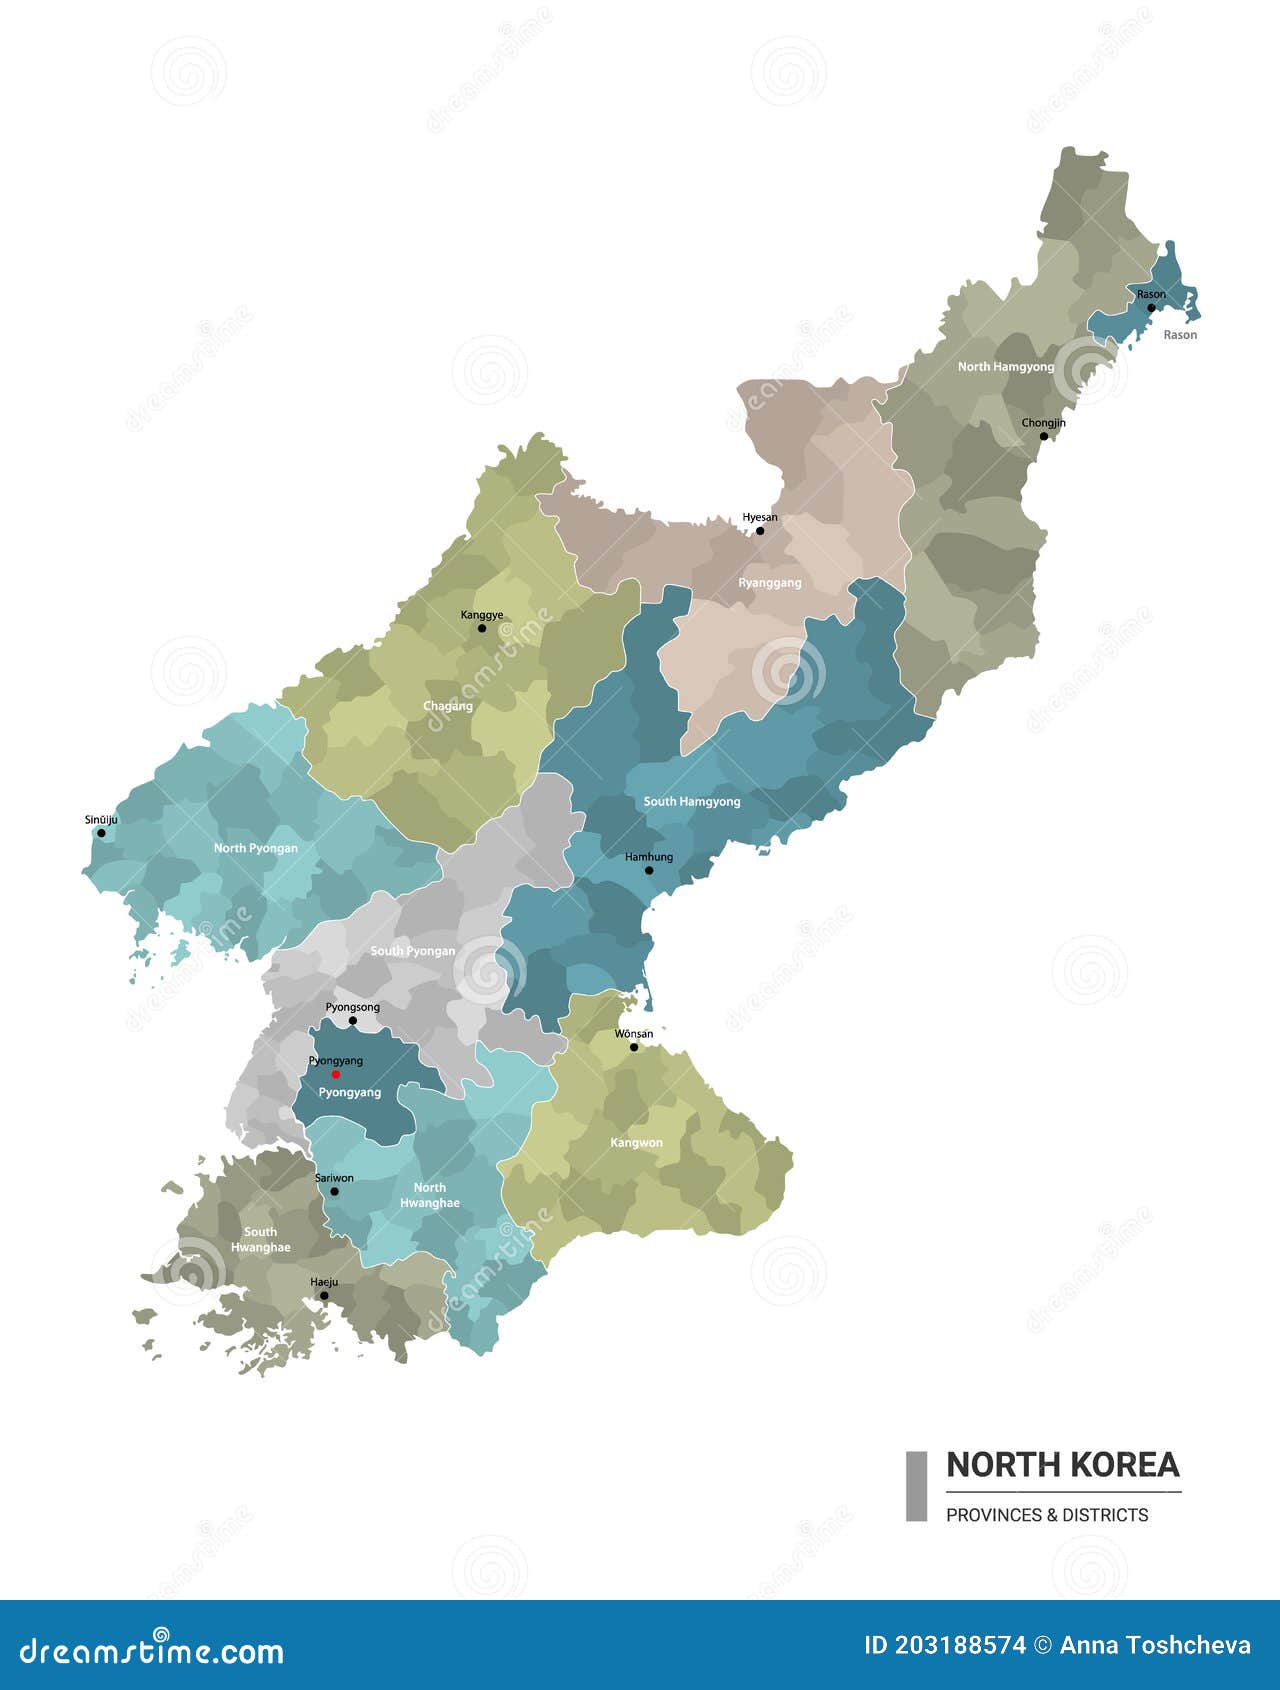 方舆 - 万国区划 - 朝鲜对内版地图之2016《朝鲜行政区域图》 - Powered by phpwind